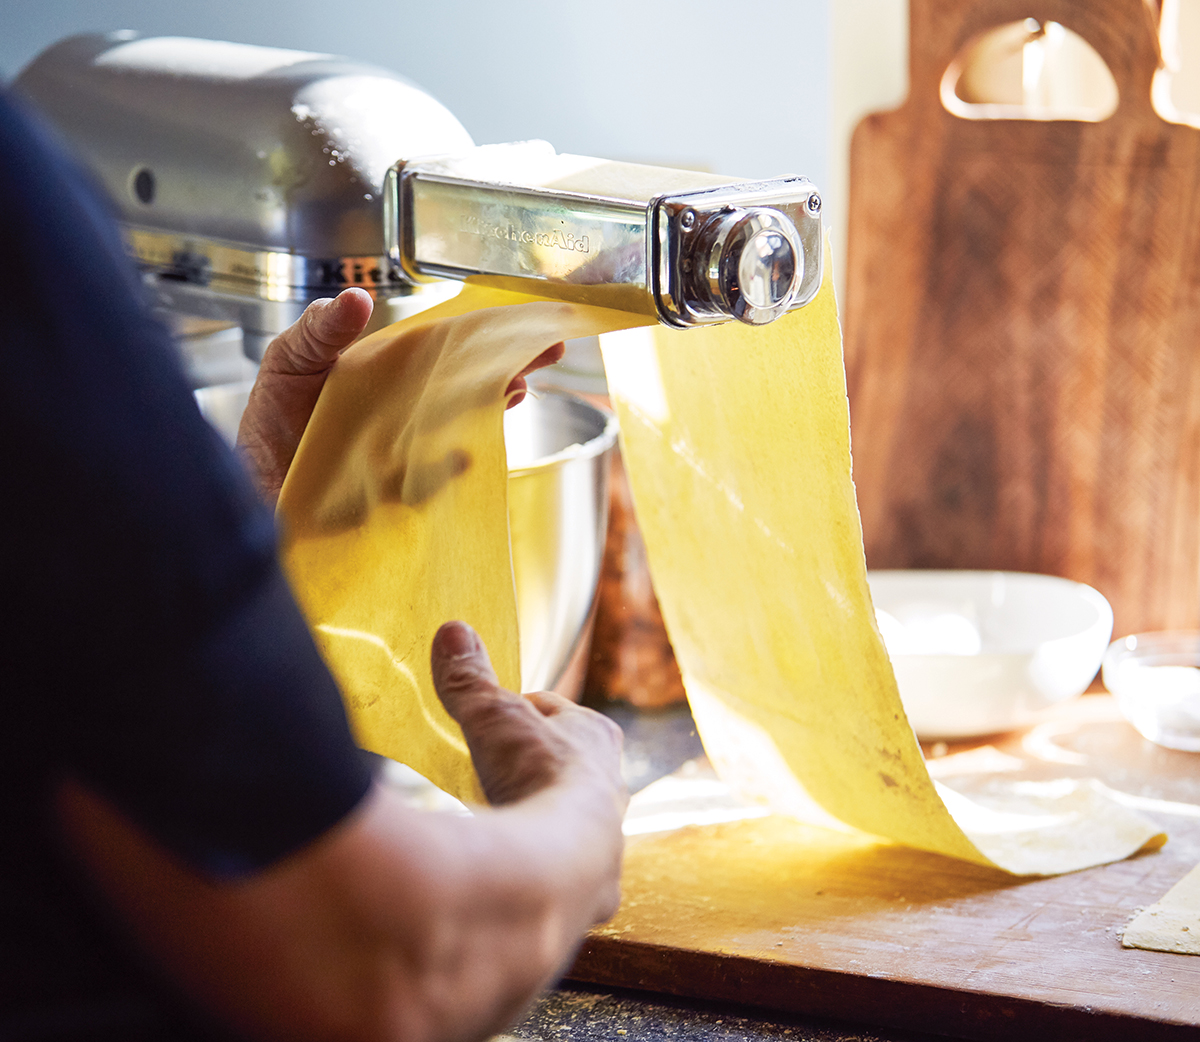 barbara lynch making lasagnette pasta